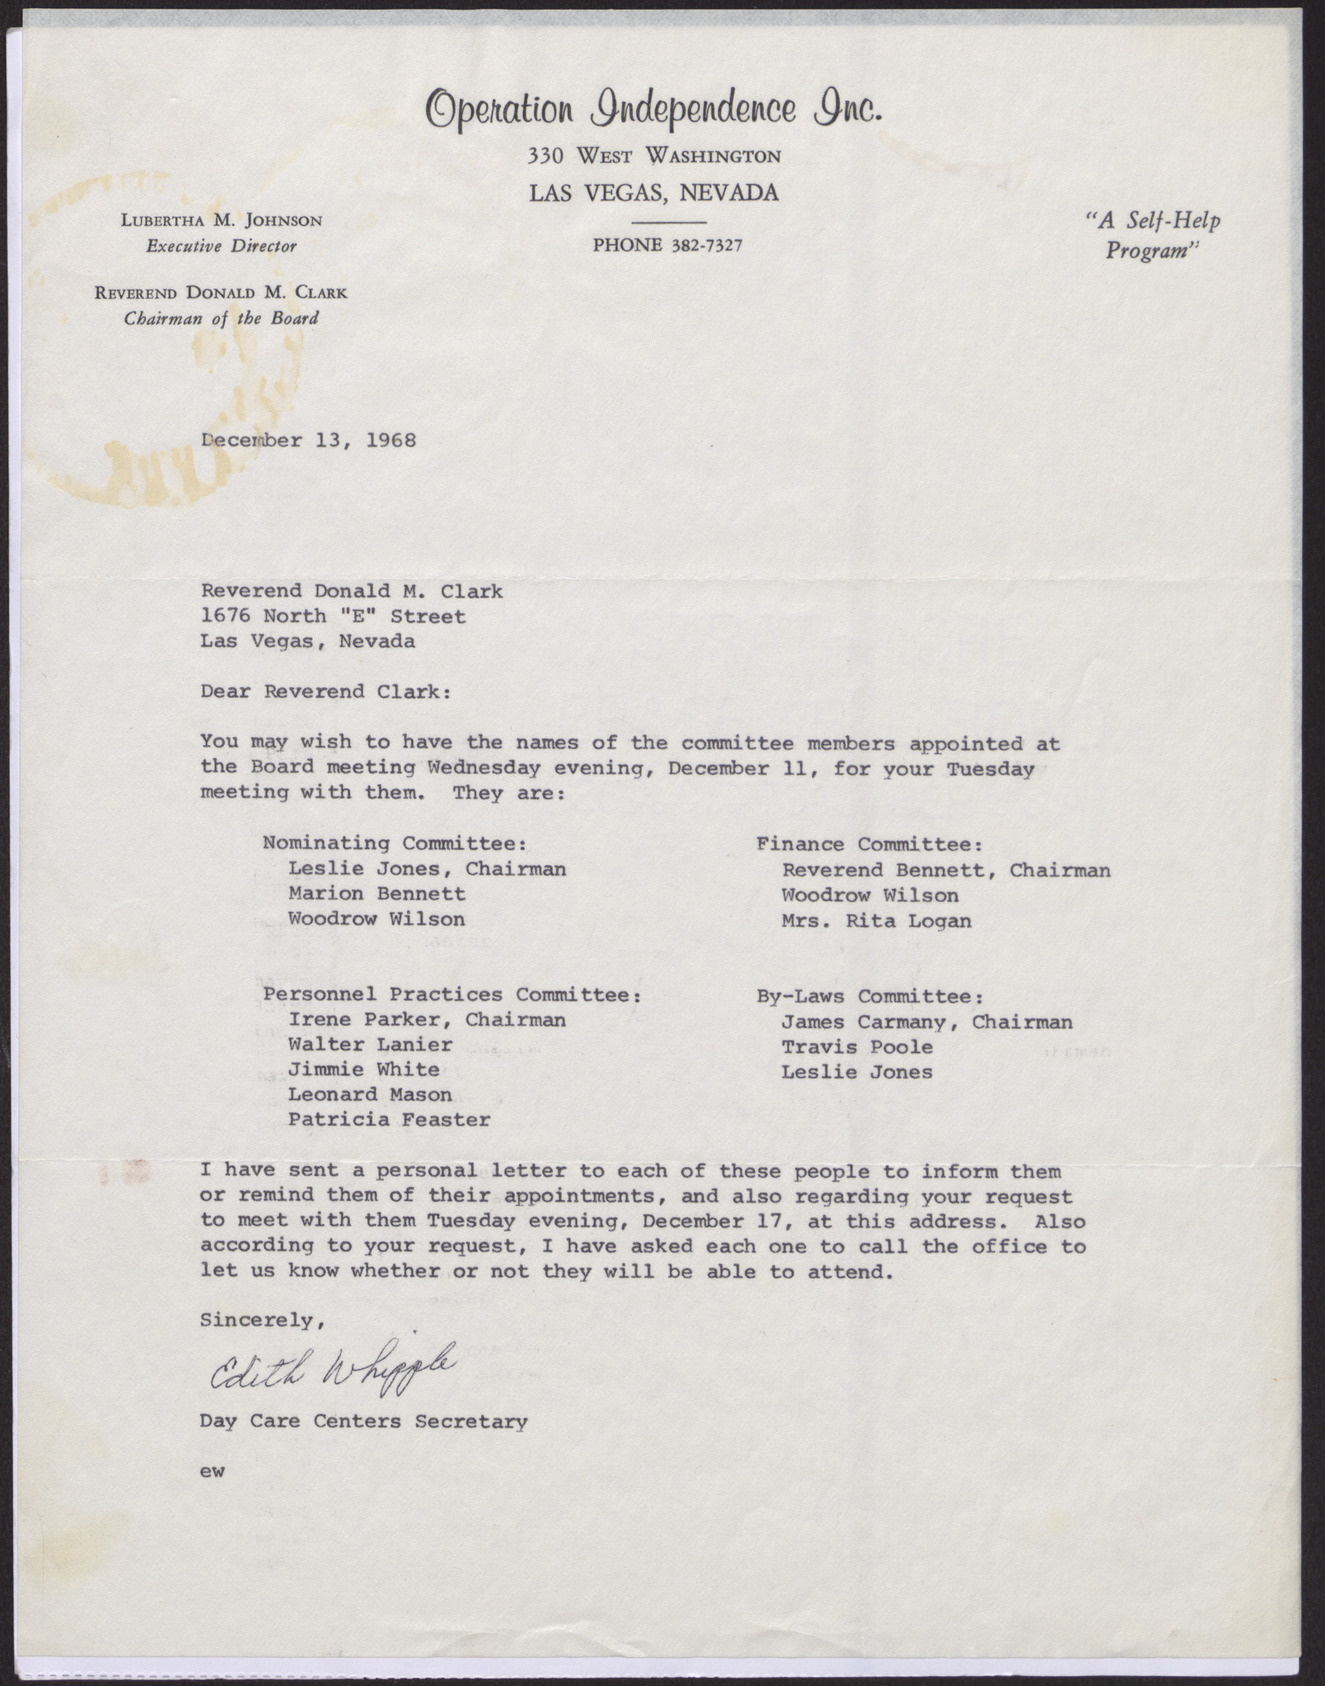 Letter to Reverend Donald M. Clark from Edith Whipple, December 13, 1968